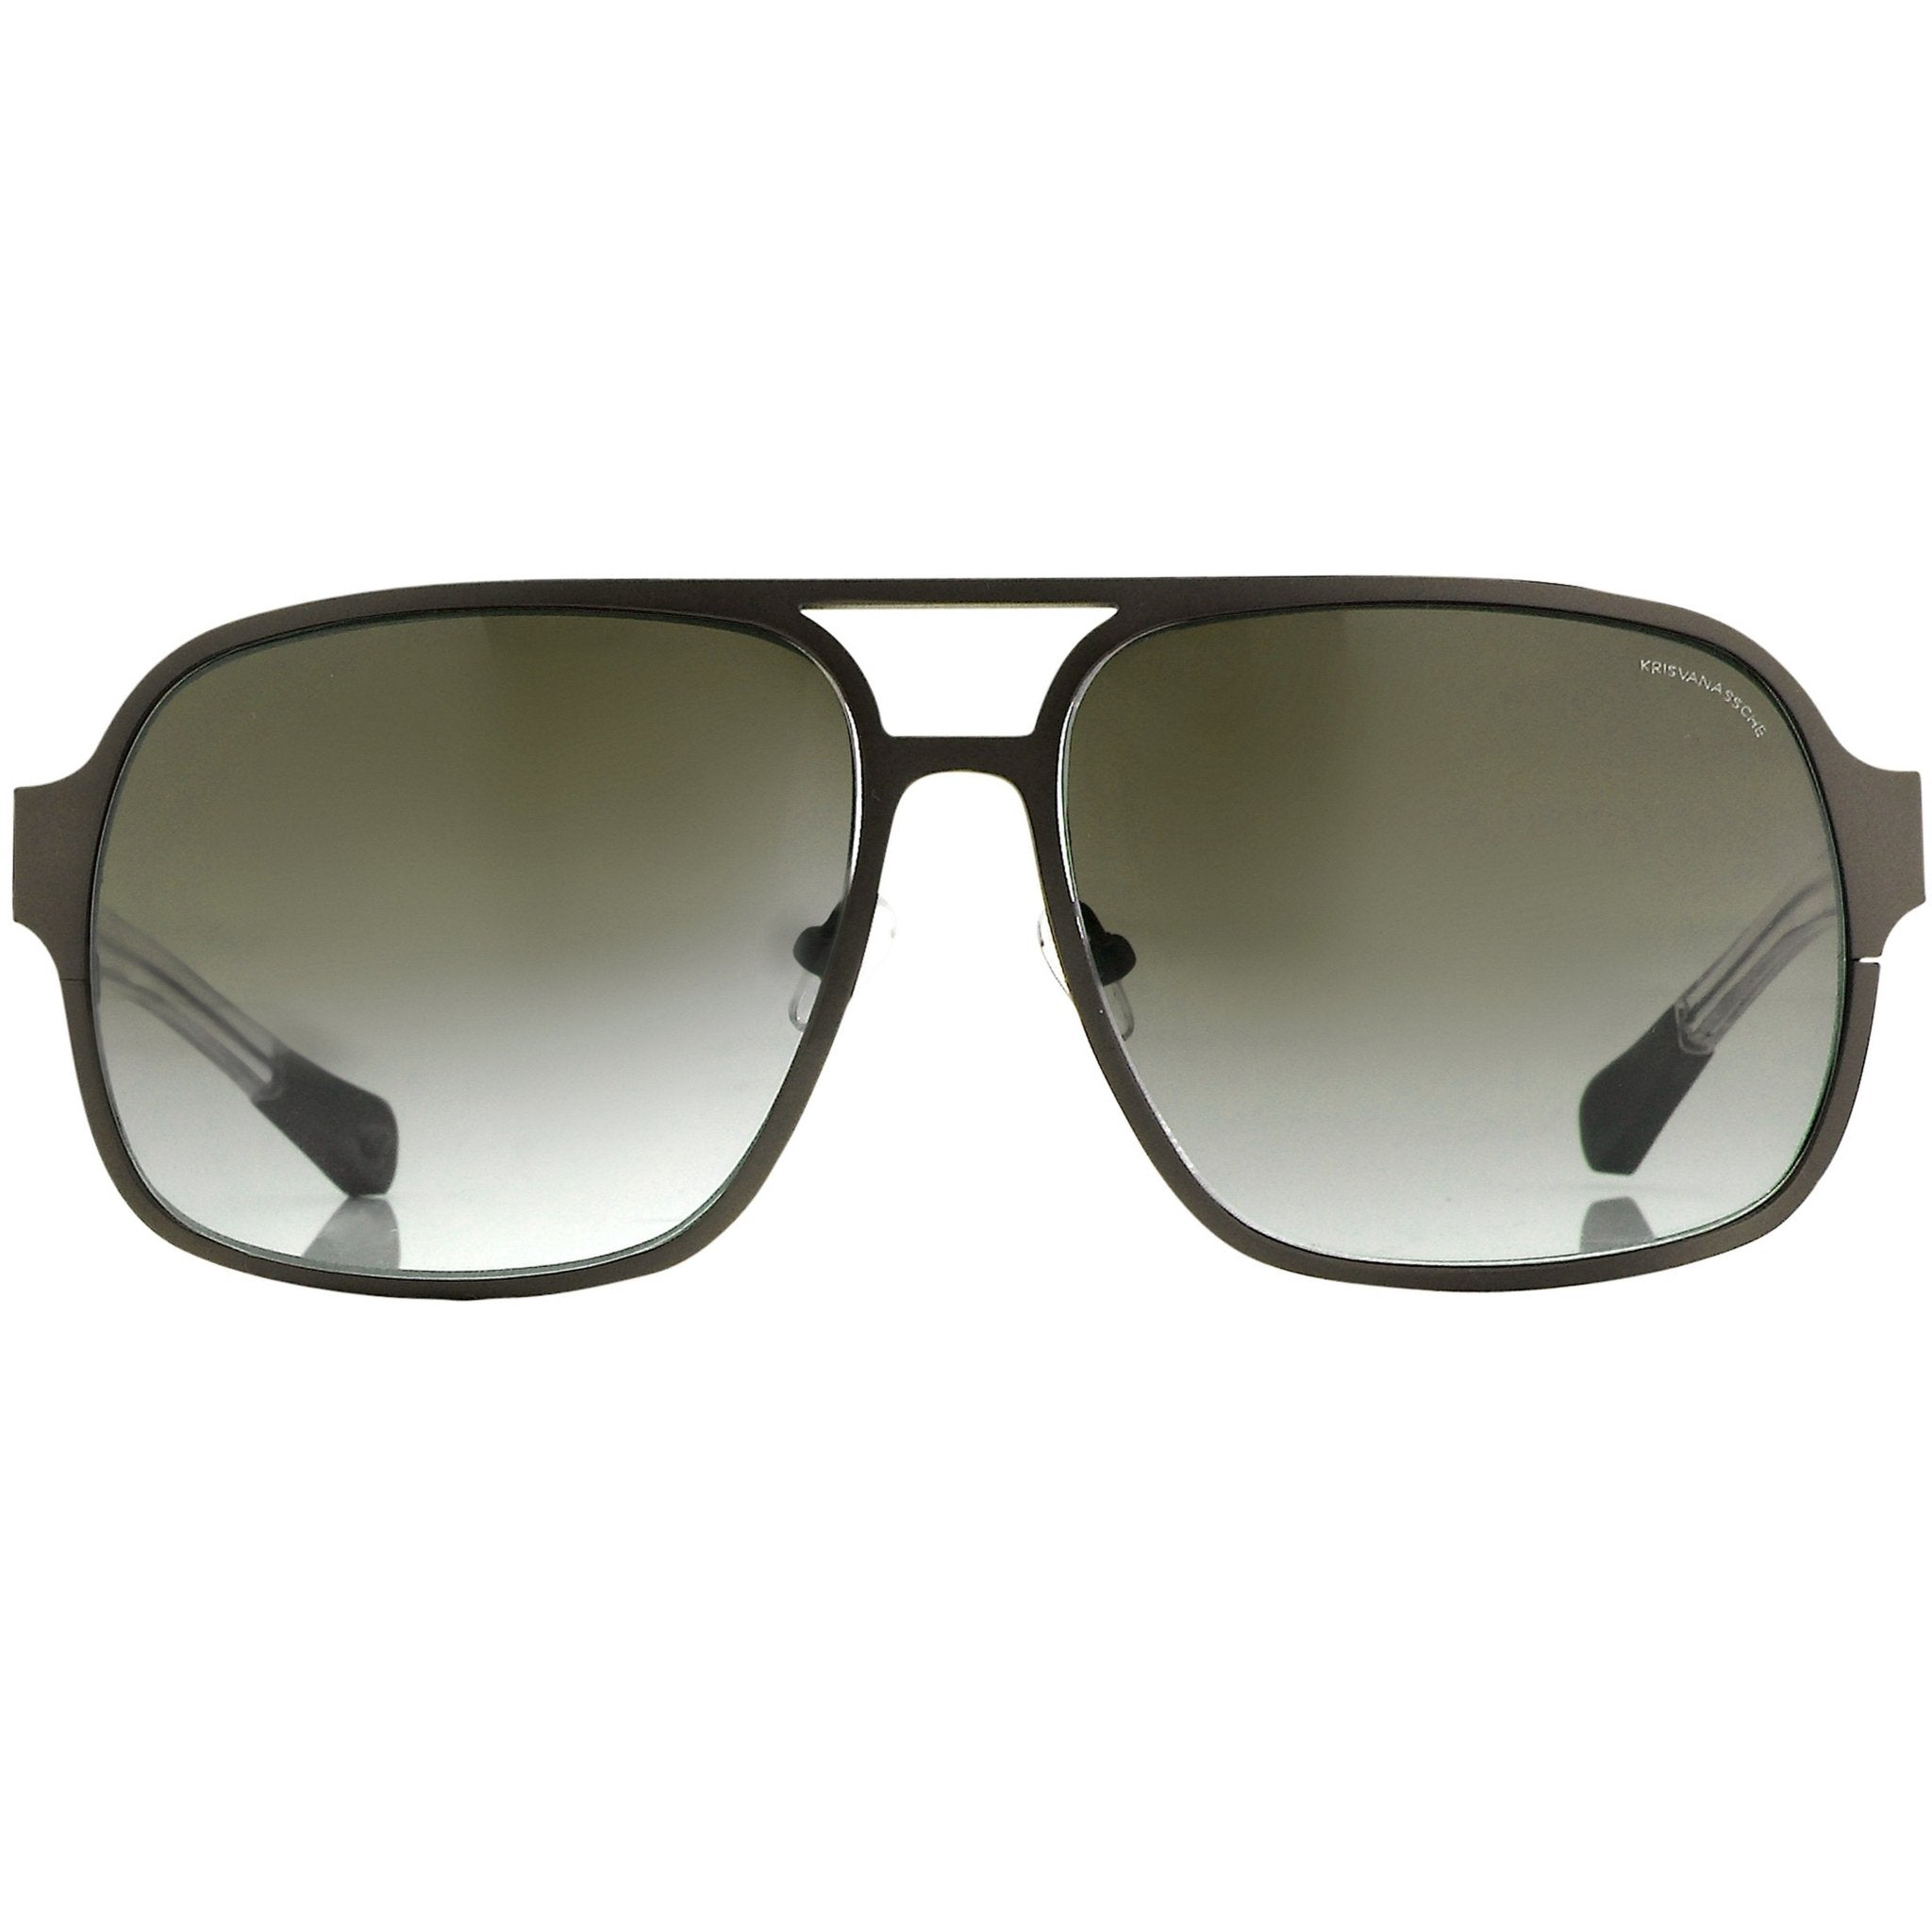 Kris Van Assche Sunglasses Rectangular Brown and Grey - Watches & Crystals